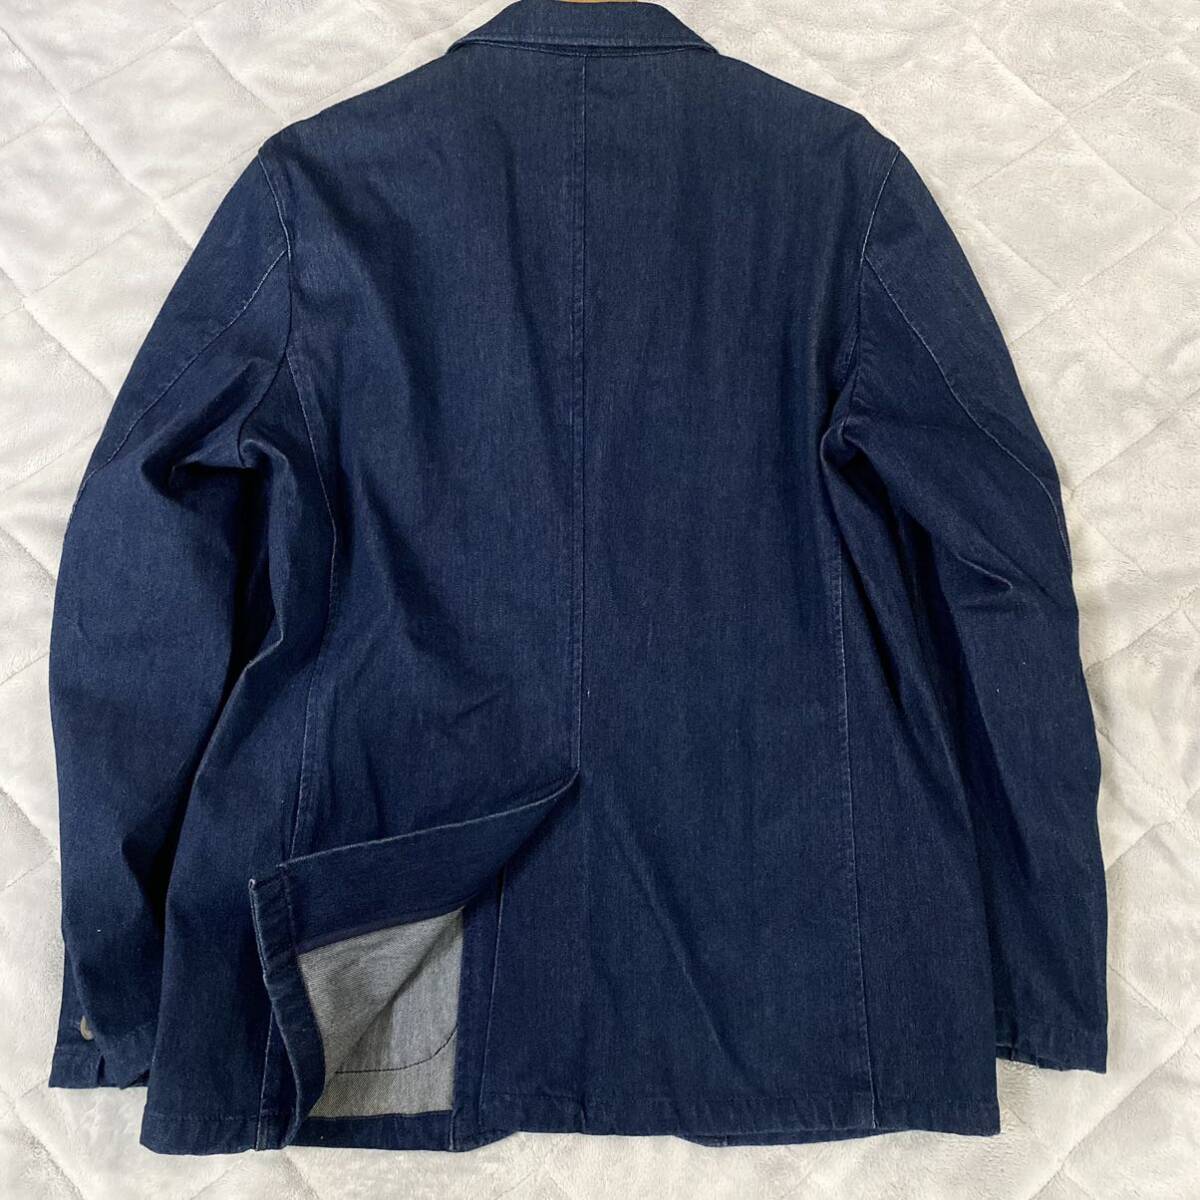  не использовался класс превосходный товар M размер *TAKEO KIKUCHI Takeo Kikuchi Anne темно синий tailored jacket индиго голубой Denim стрейч эластичность темно синий весна 